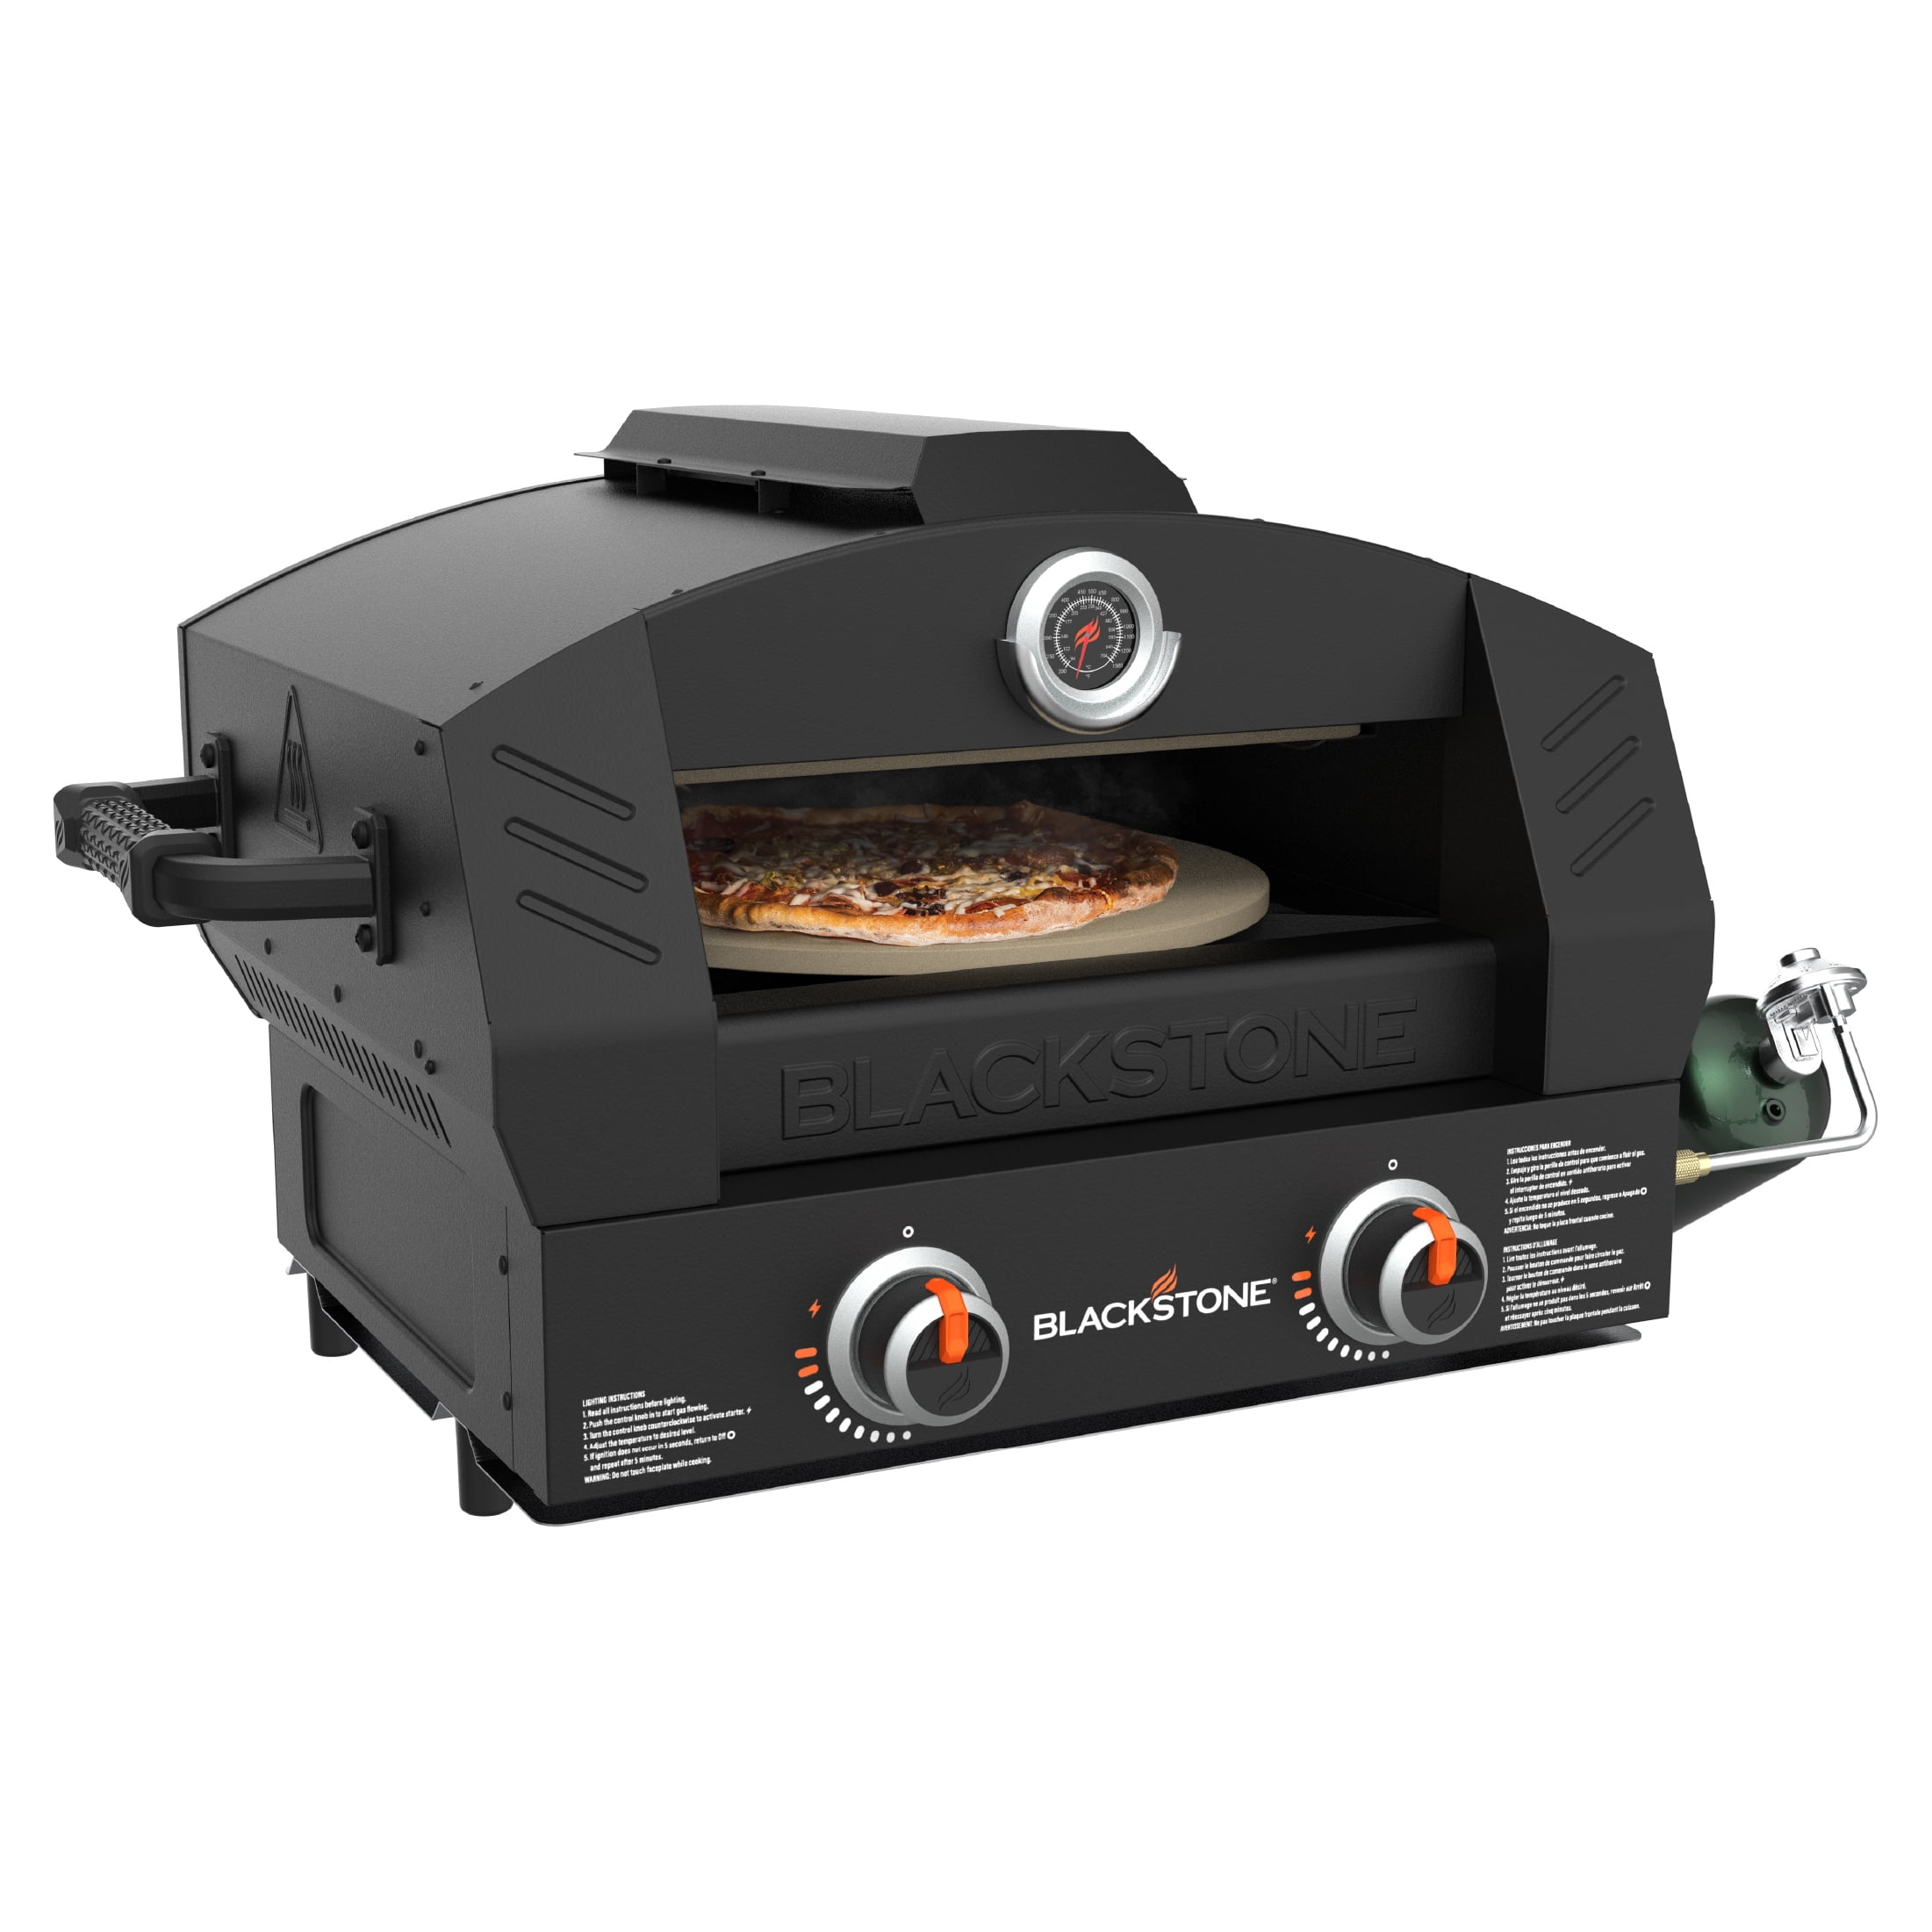 Blackstone Tabletop Propane Pizza Oven with Two 15" Cordierite Stones